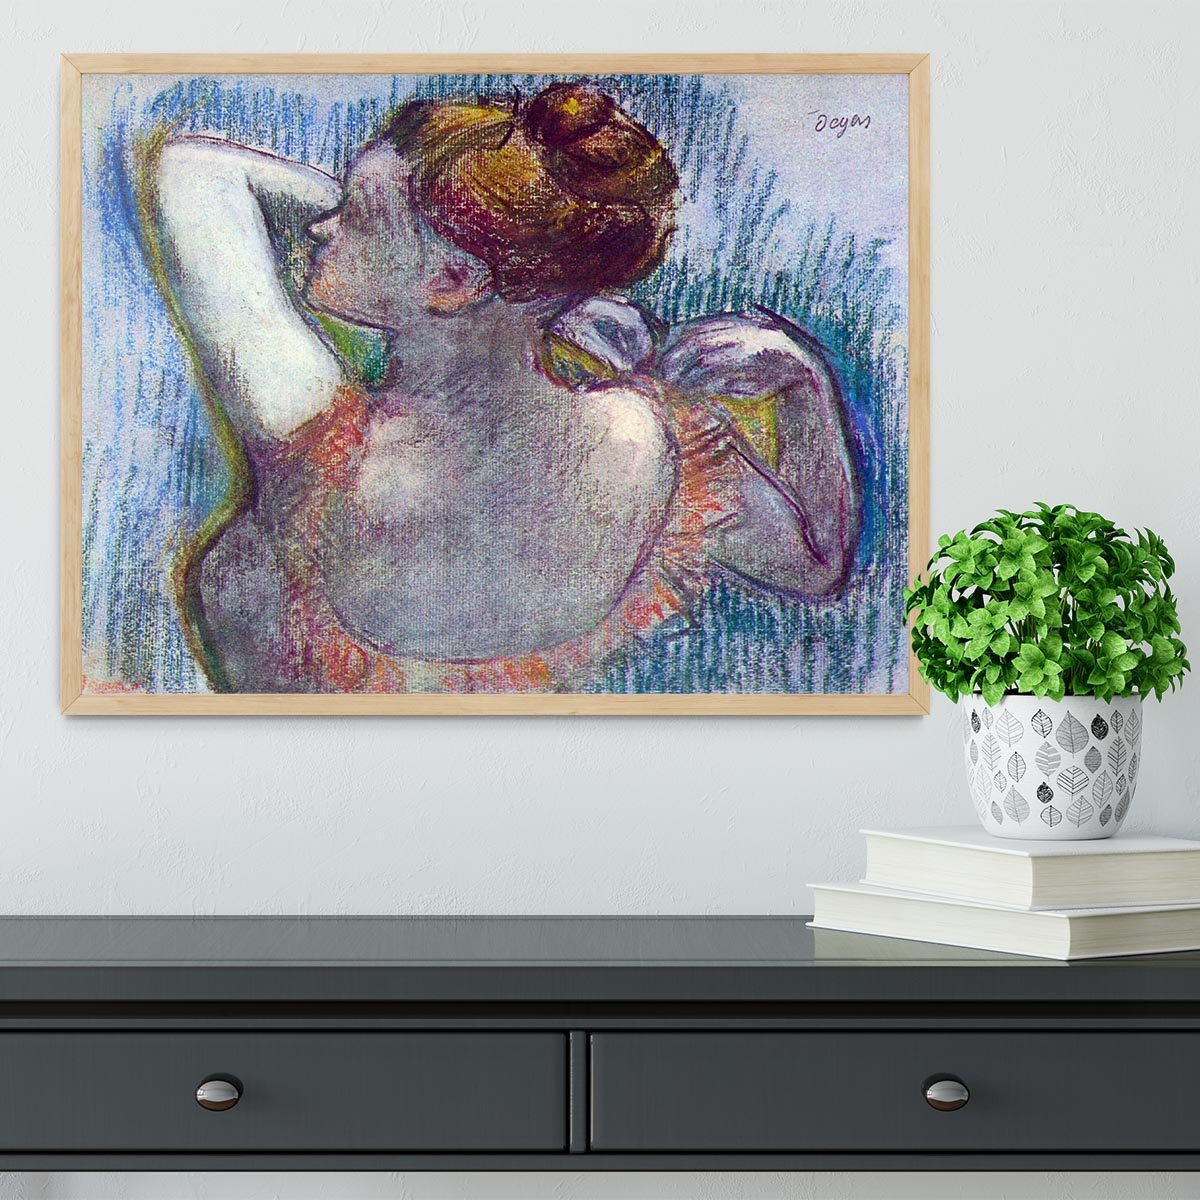 Dancer by Degas Framed Print - Canvas Art Rocks - 4